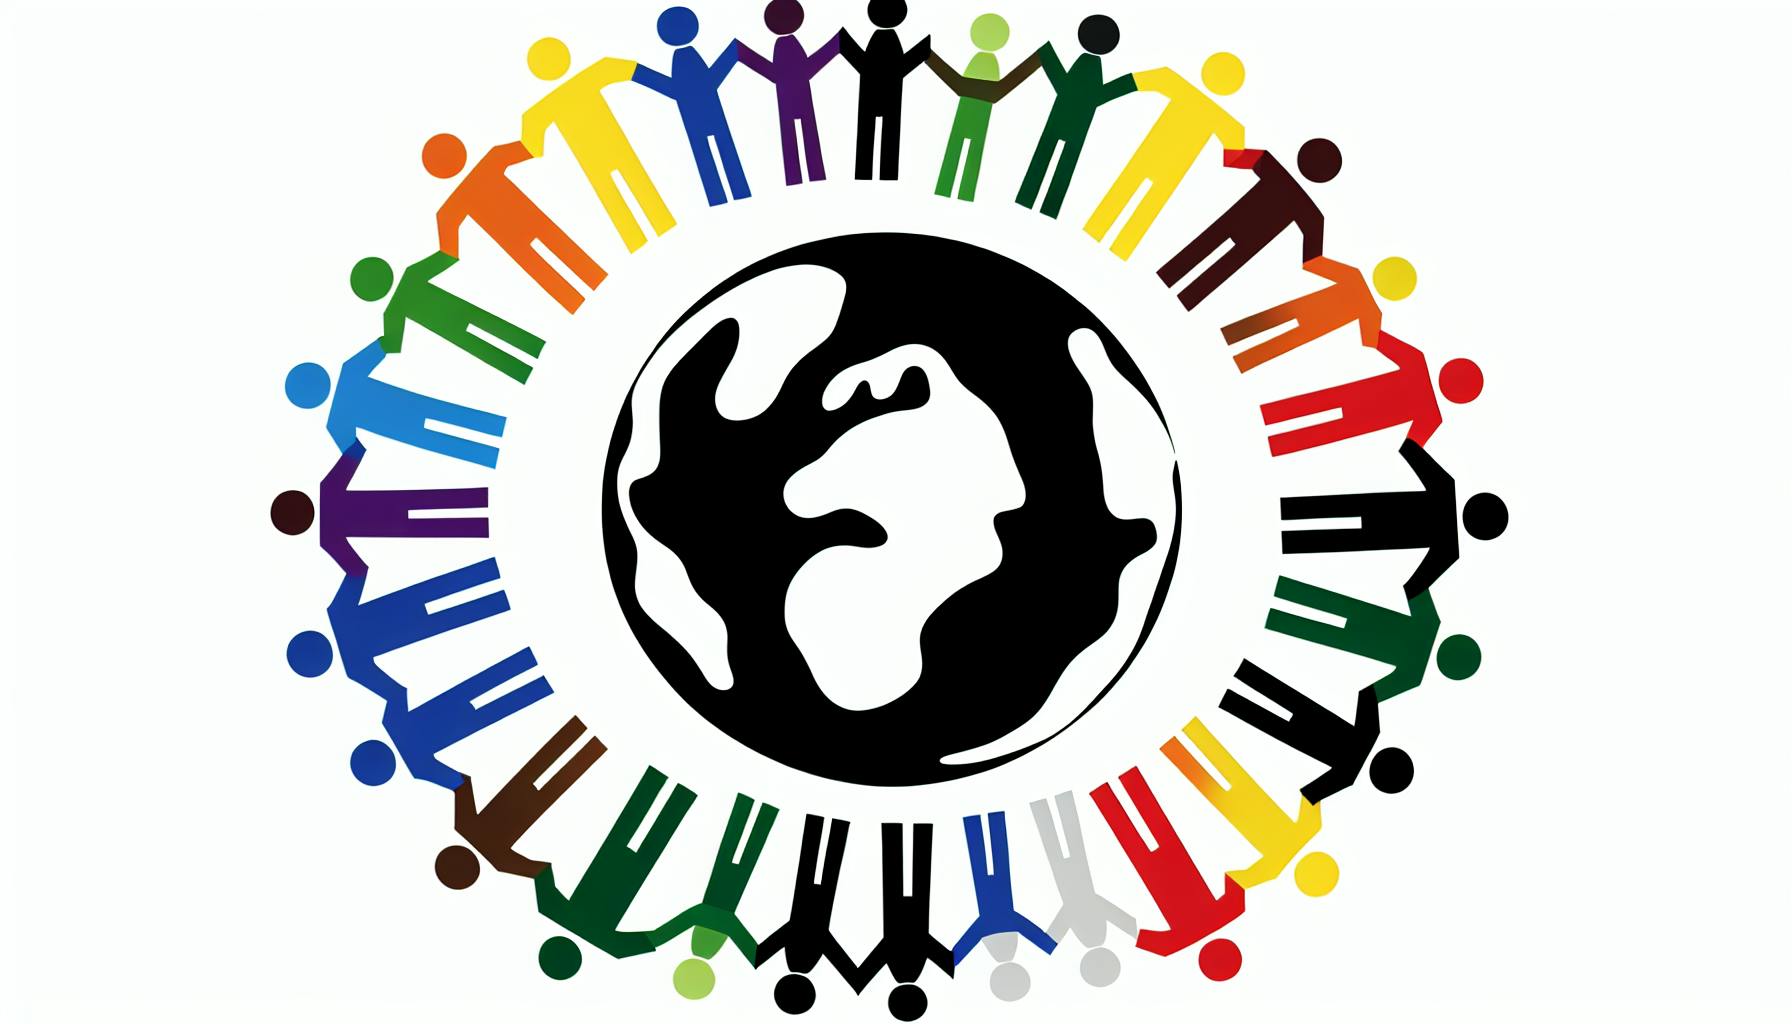 Ehrenamtlich im Ausland arbeiten: Interkulturelle Kompetenz aufbauen